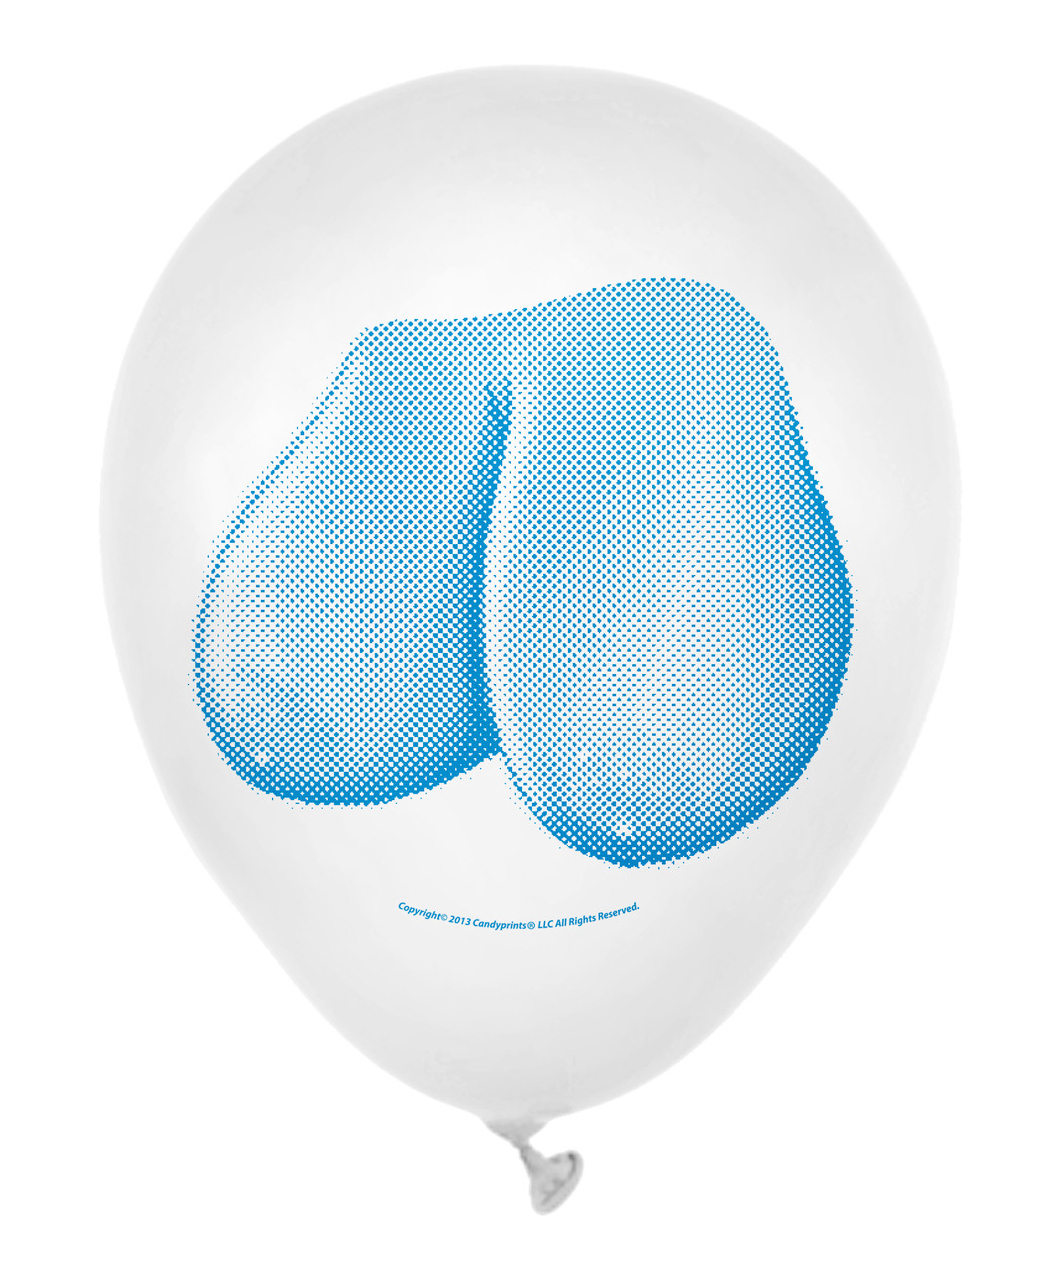 Little Genie Dirty Balloons Booby надувные шары (8 шт.)